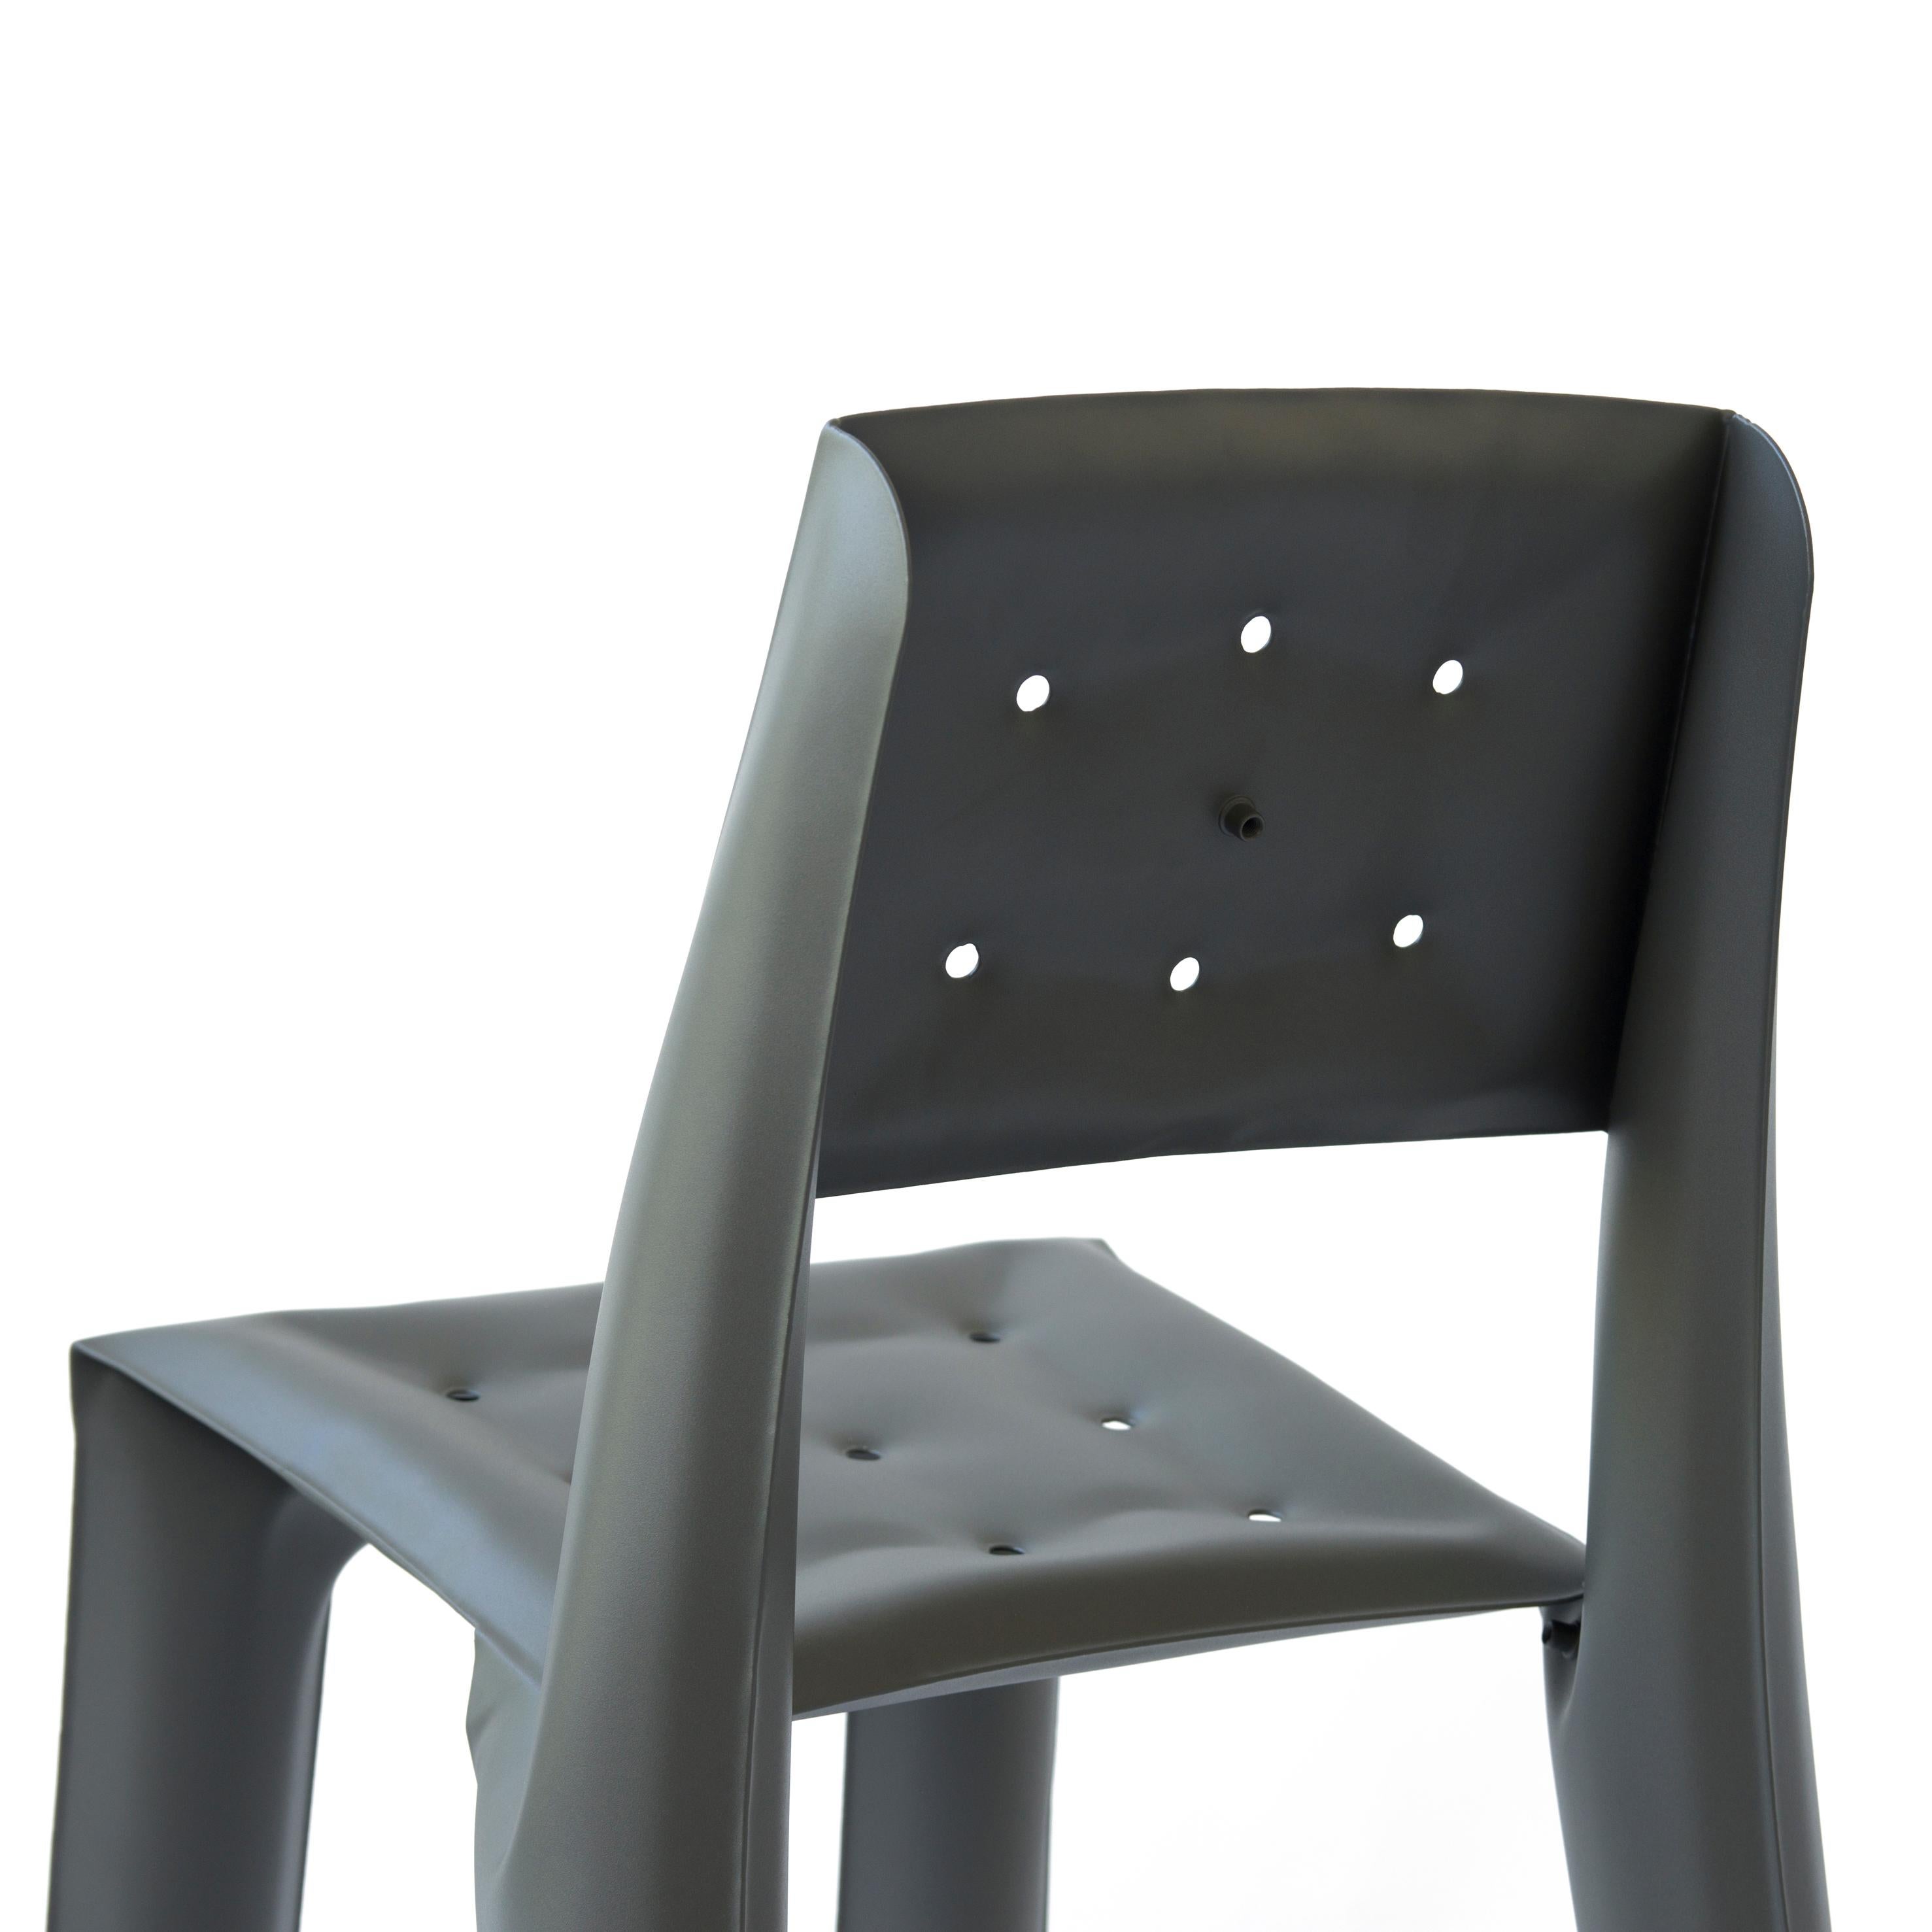 Umbra Grey Aluminum Chippensteel 0.5 Sculptural Chair by Zieta For Sale 1